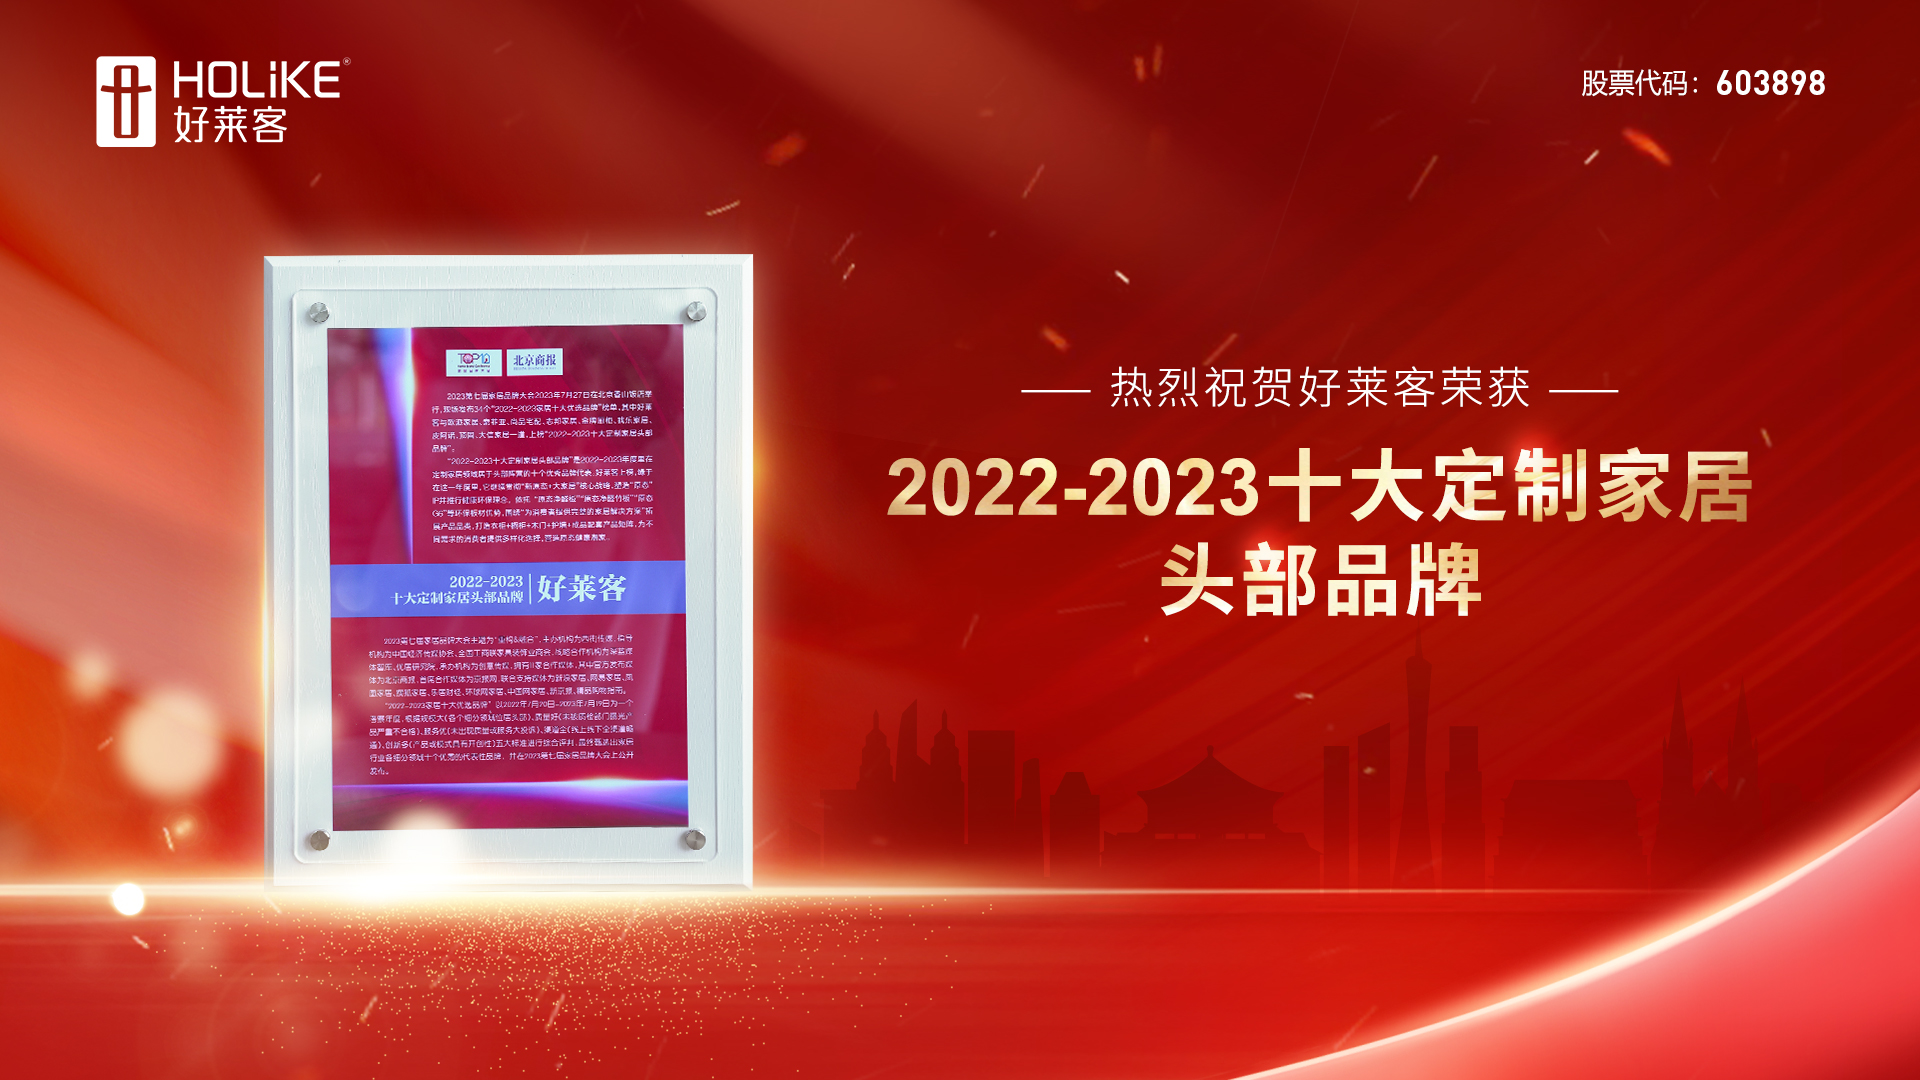 捷报 | 耀世平台荣誉上榜2022-2023十大定制家居头部品牌，实力诠释品牌力量！